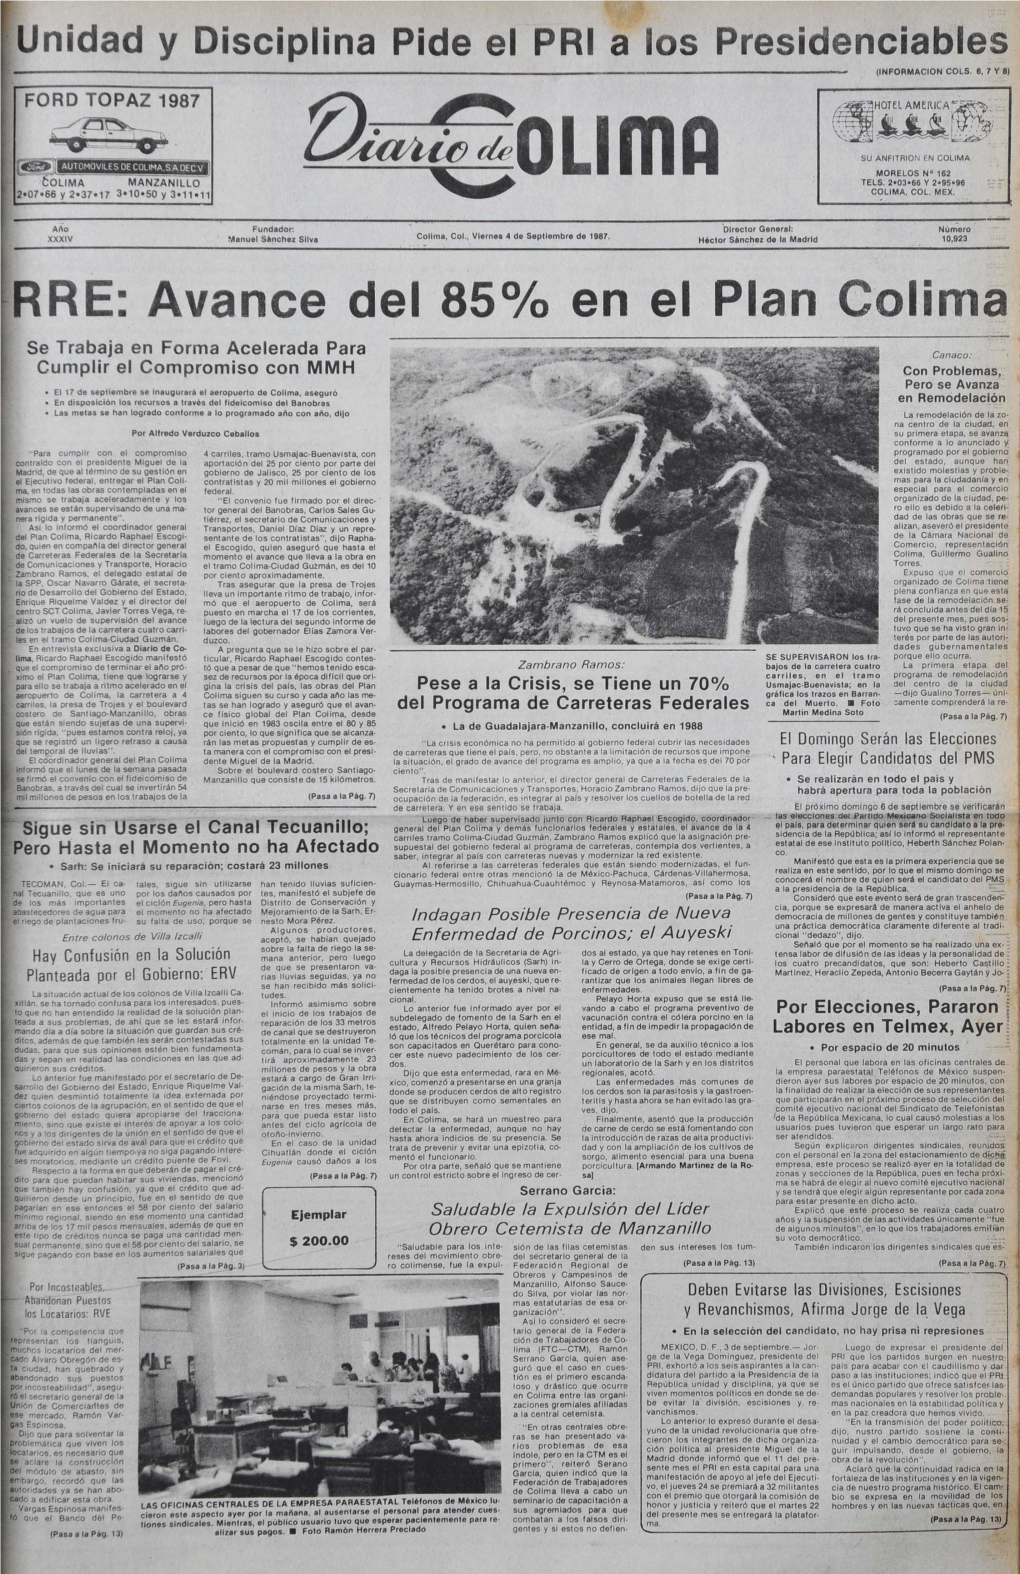 RRE: Avance Del 85% En El Plan Colima